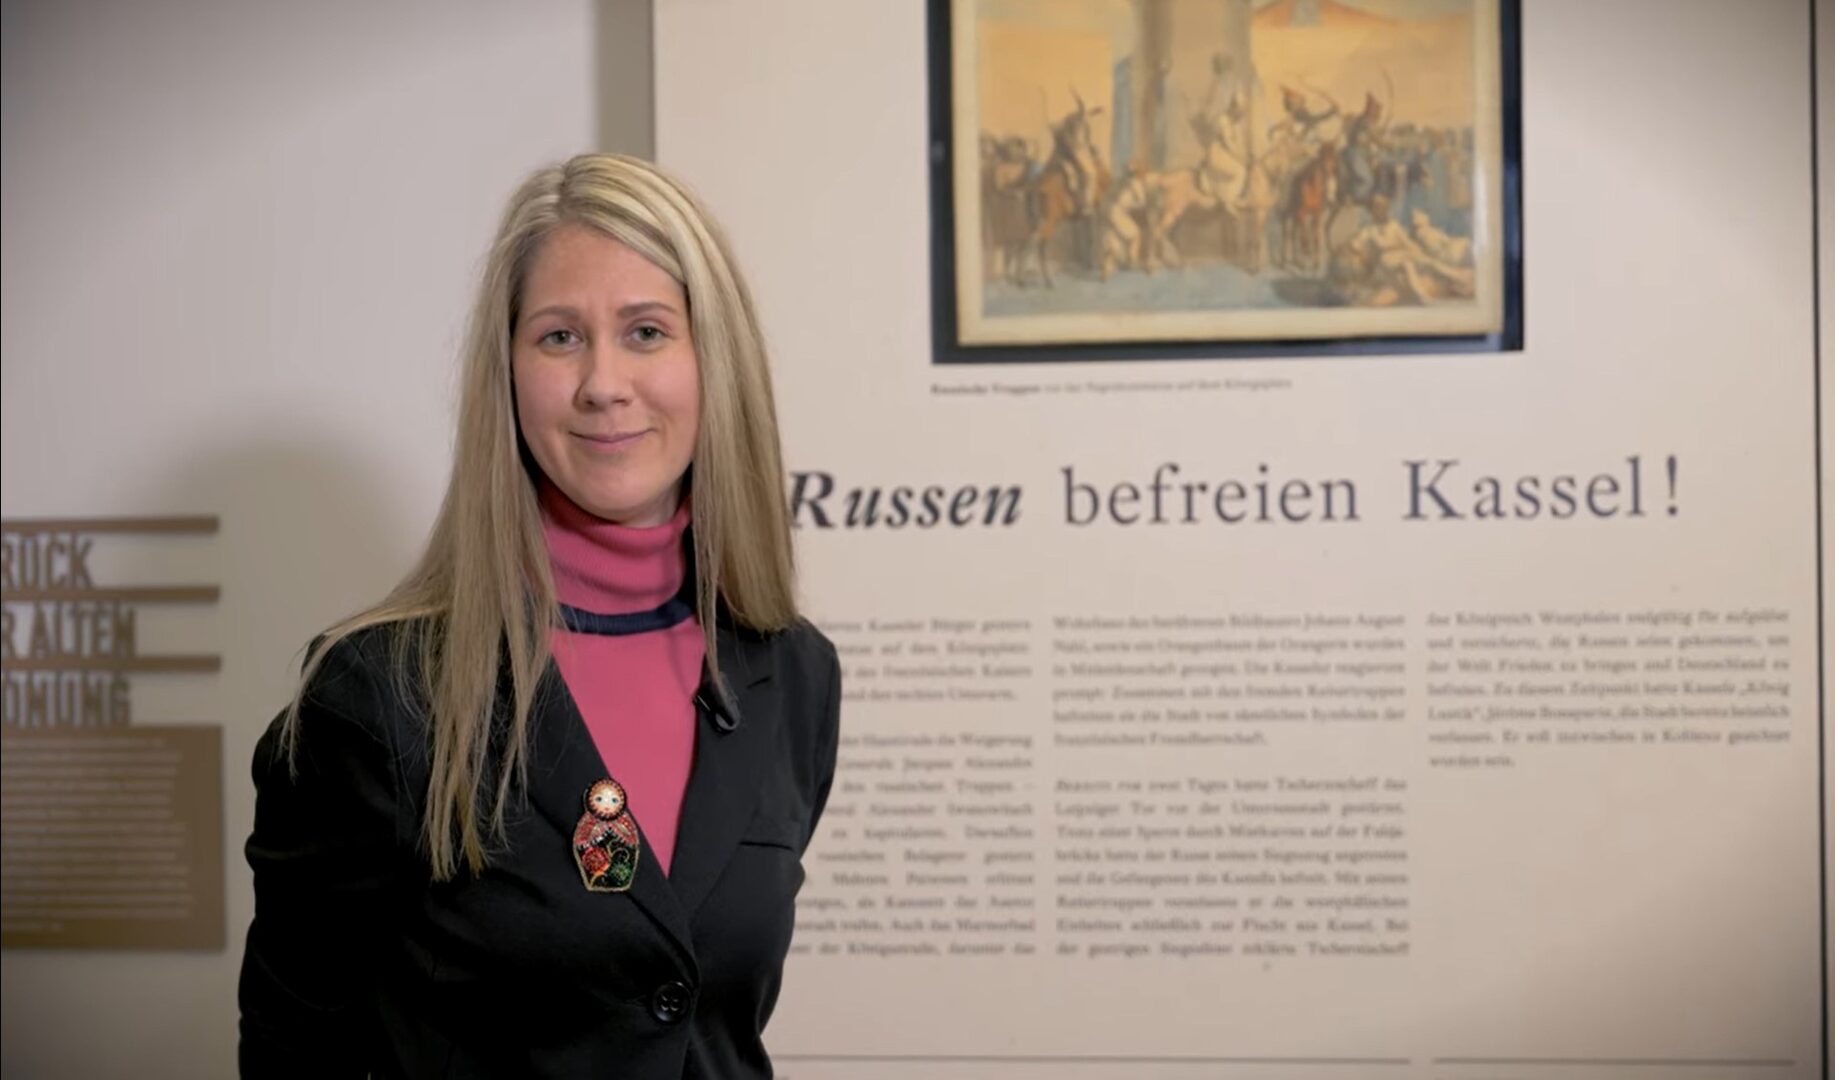 Kurzführung durch die Dauerausstellung des Stadtmuseums Kassel in russischer Sprache.